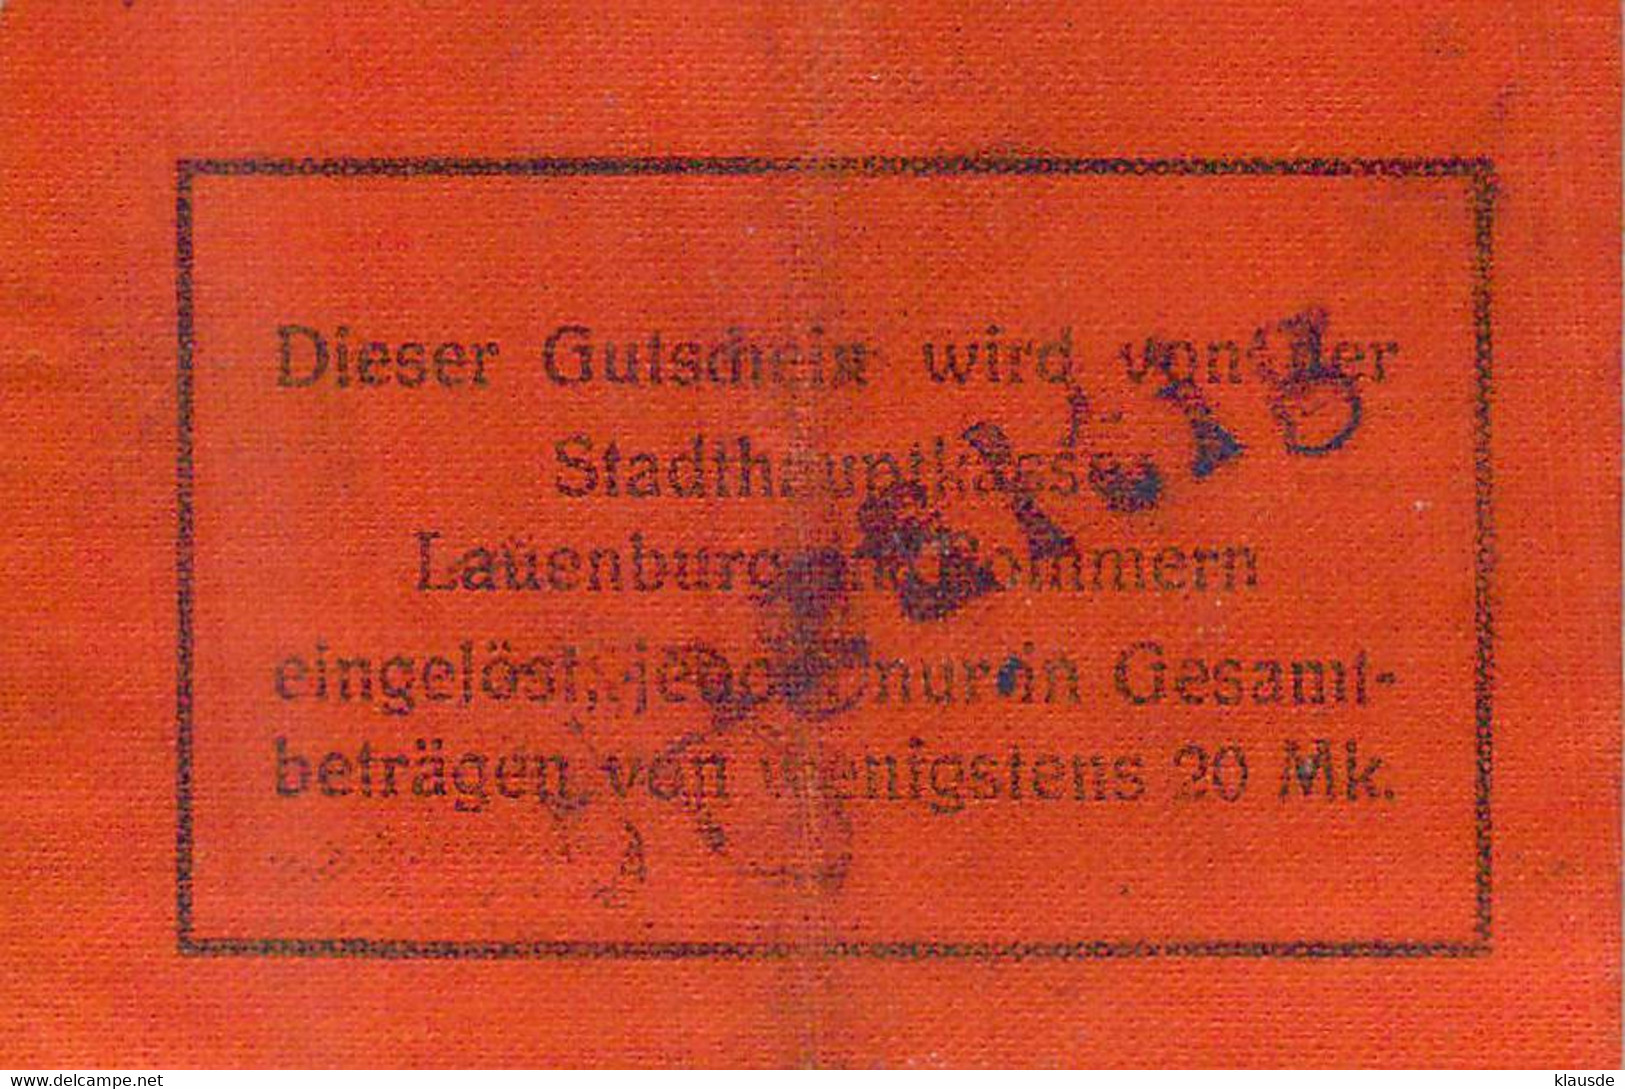 Lauenburg /Pom. (Leborg) Notgeld 1+2 MK Auf Leinenpapier - 1° Guerre Mondiale